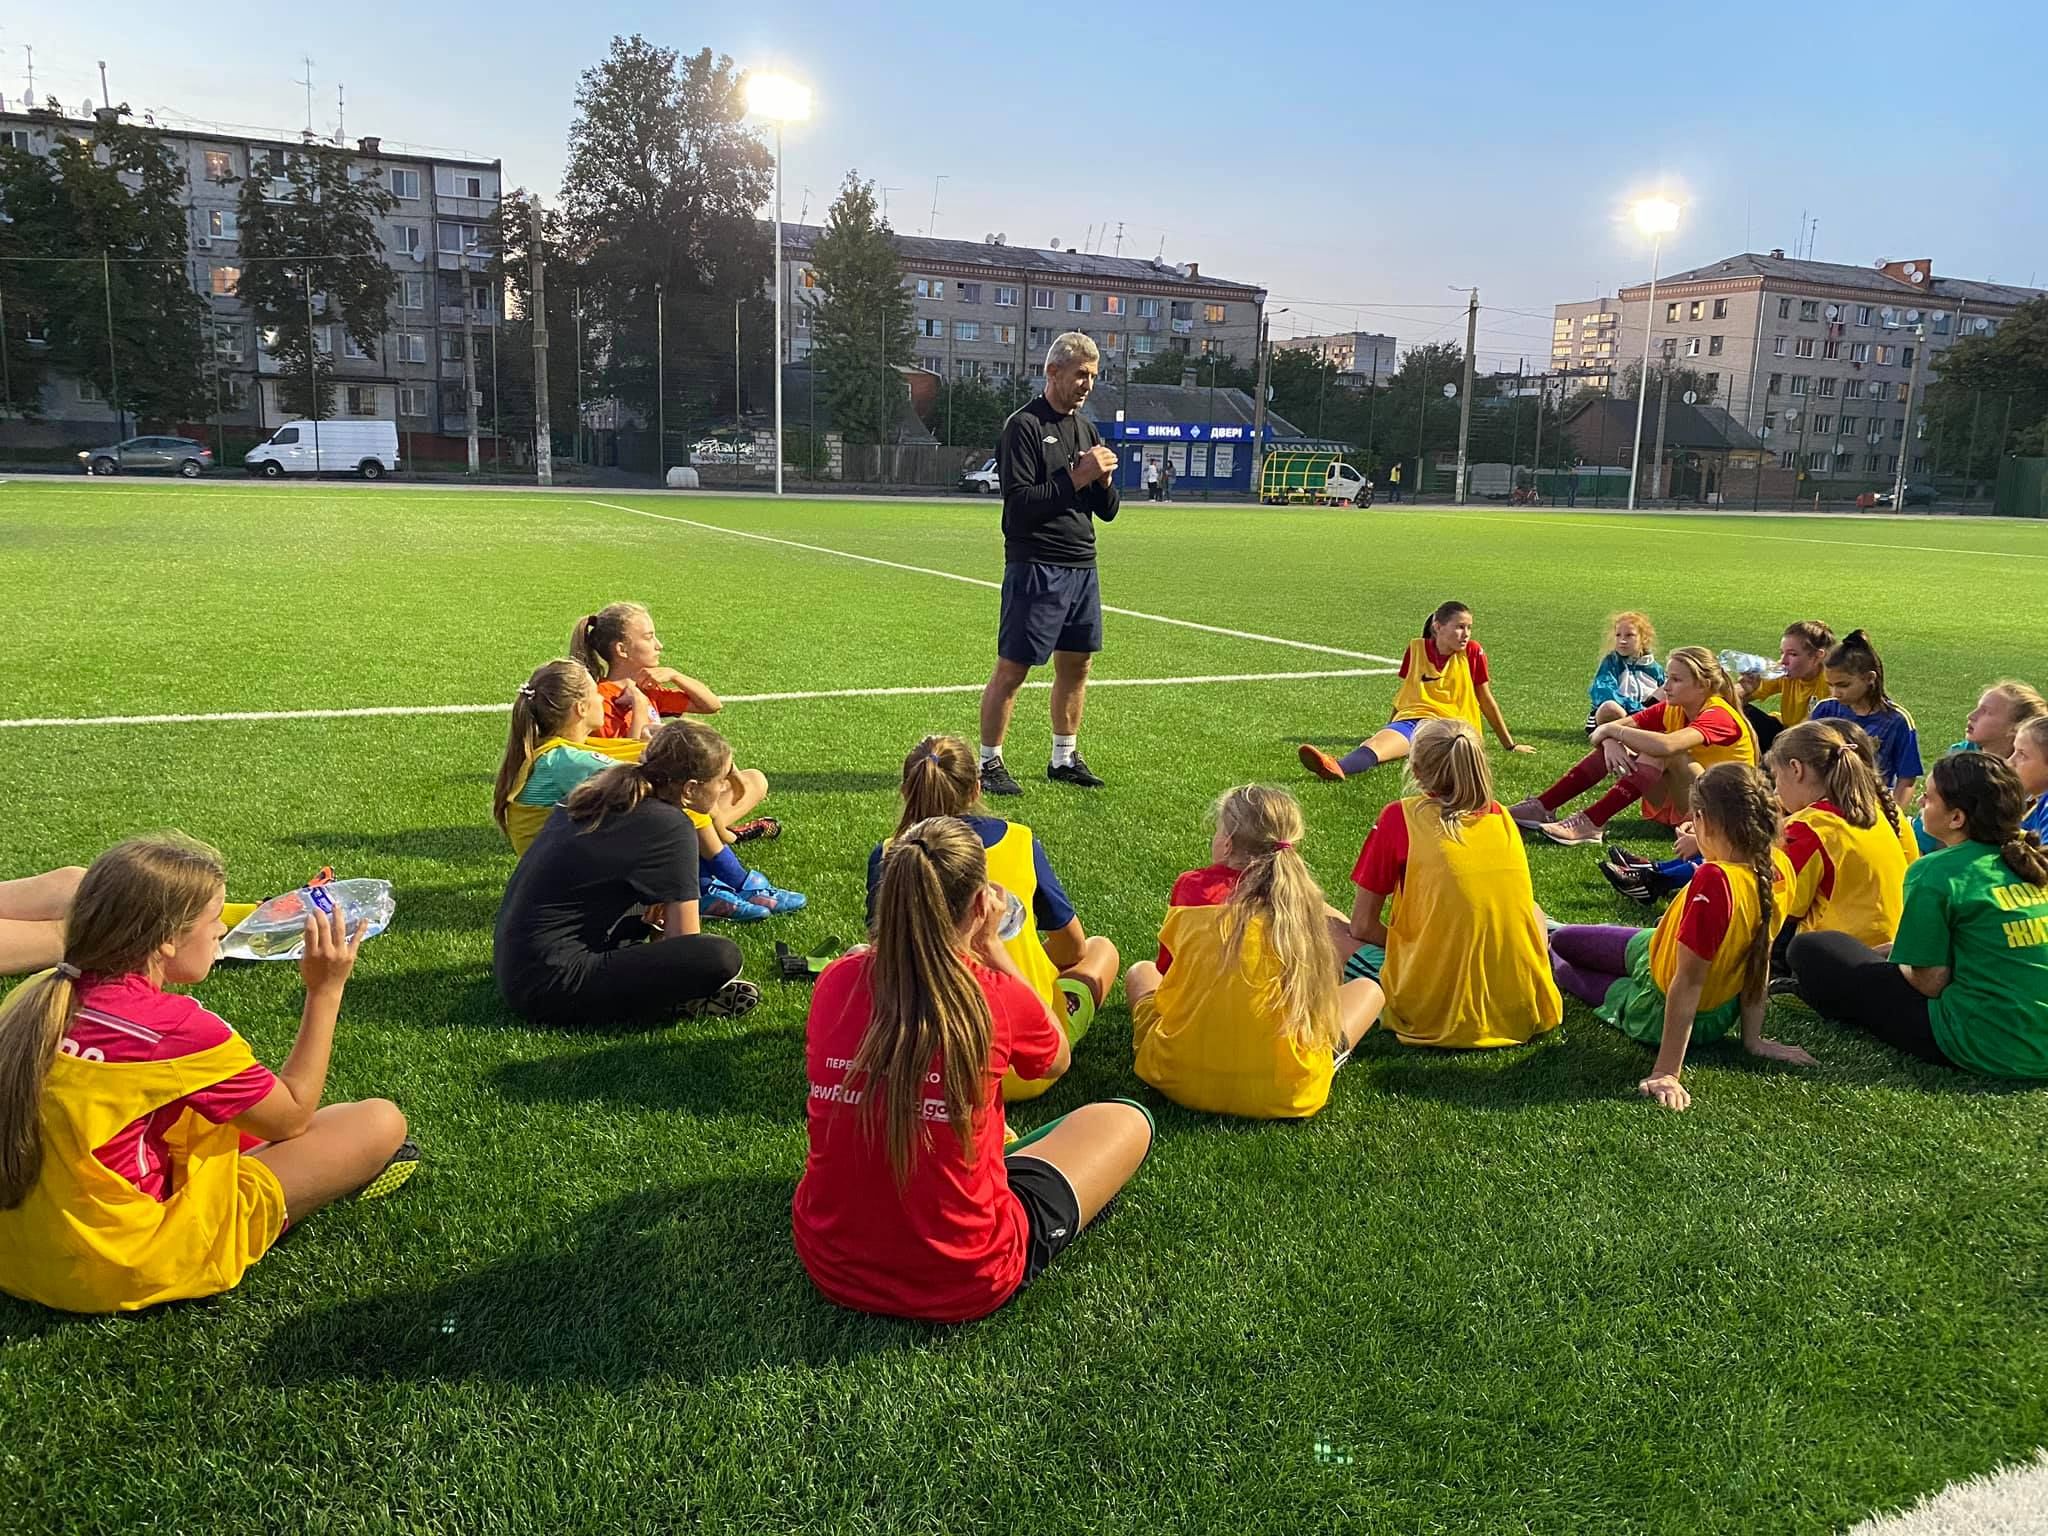 Зробити футбол цікавим для дівчат:  житомирський тренер виховує юних зірочок жіночого футболу